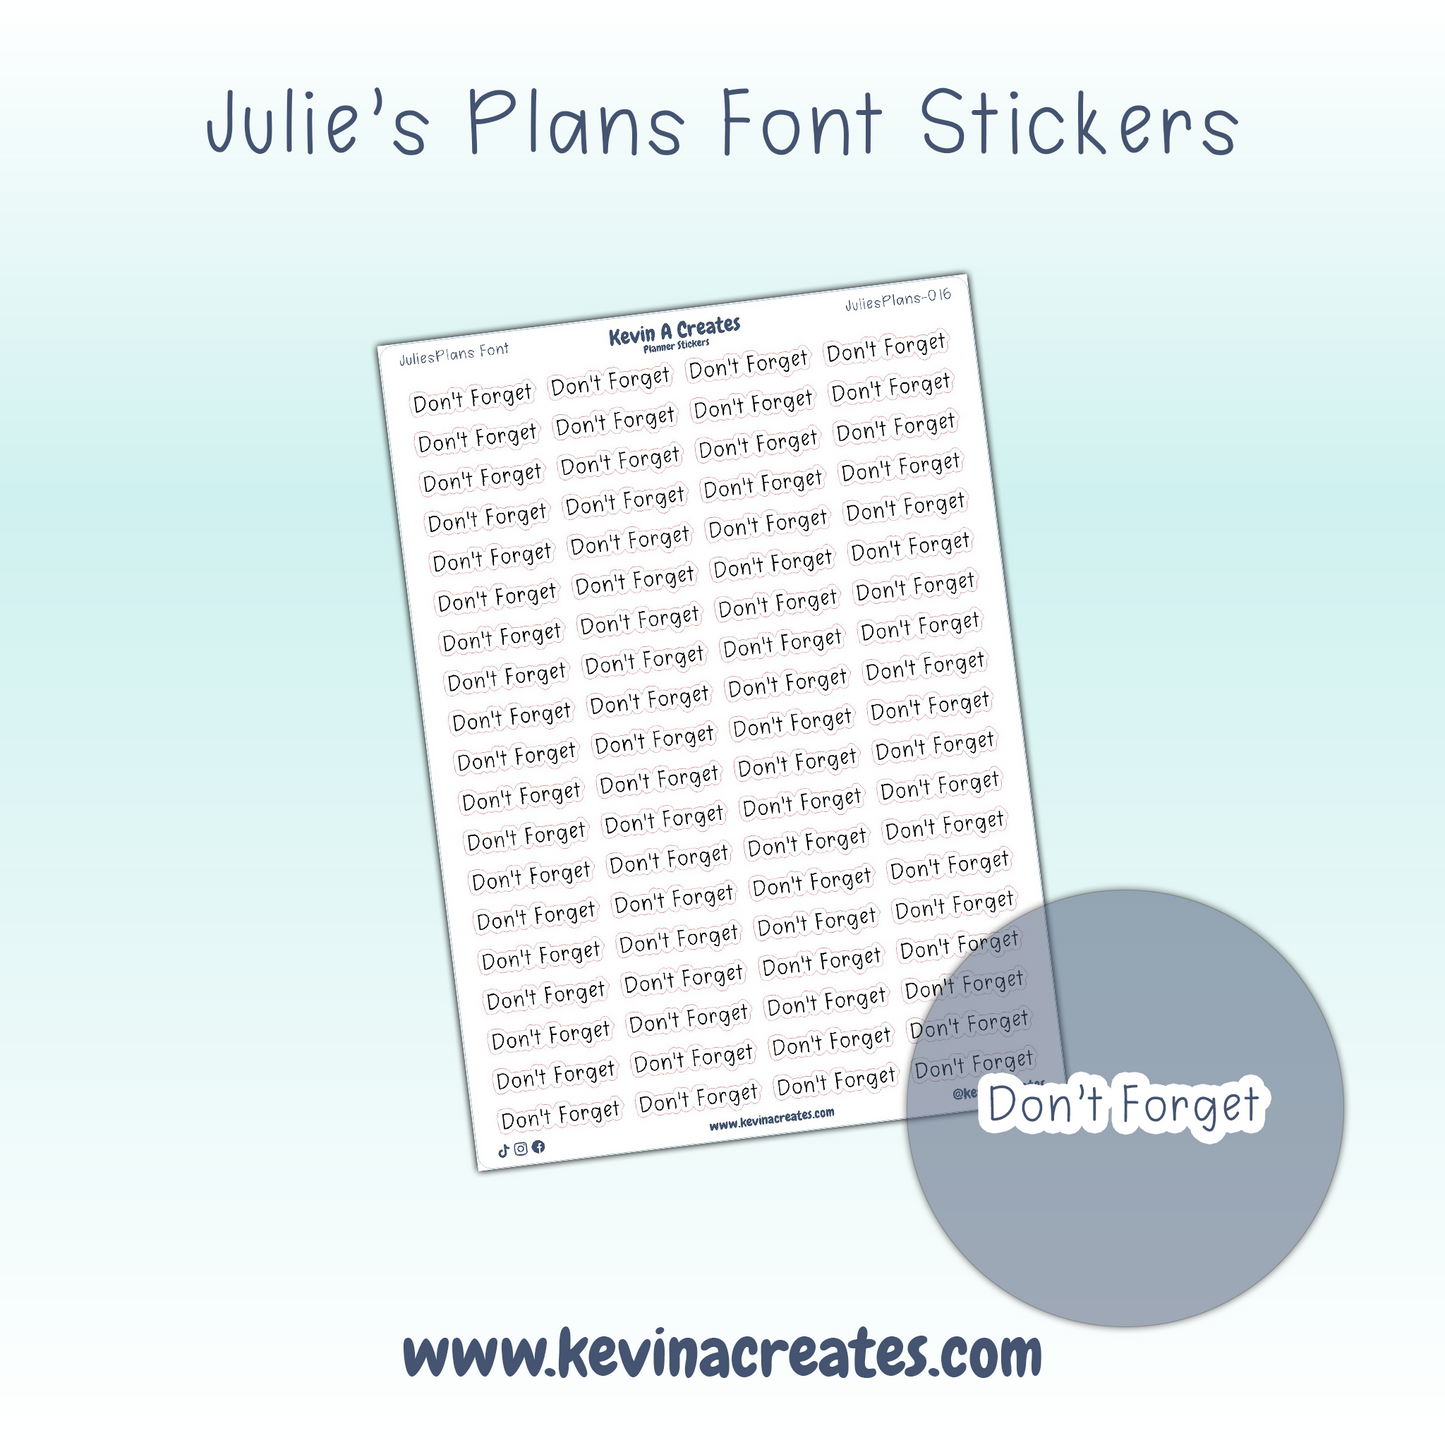 JuliesPlans-016, DON'T FORGET, JuliesPlans Font, Script Planner Stickers